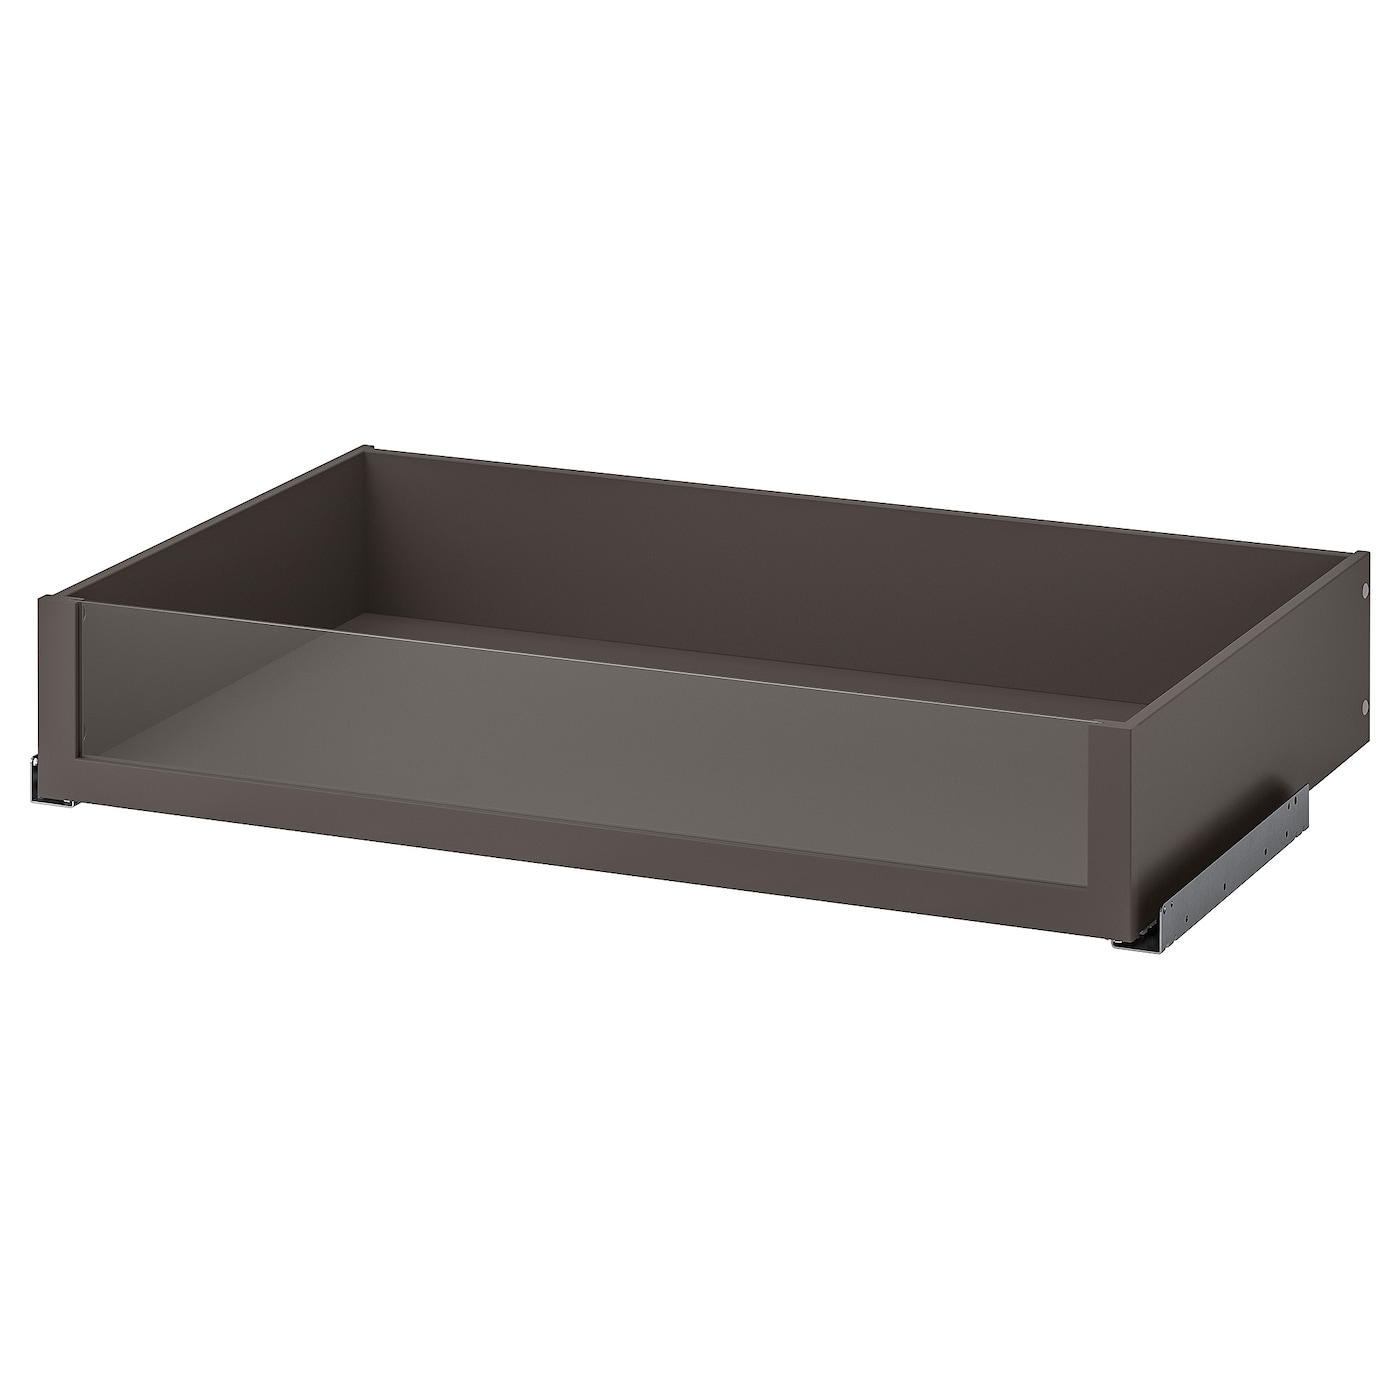 Ящик с фронтальной панелью - IKEA KOMPLEMENT, 100x58 см, темно-серый КОМПЛИМЕНТ ИКЕА